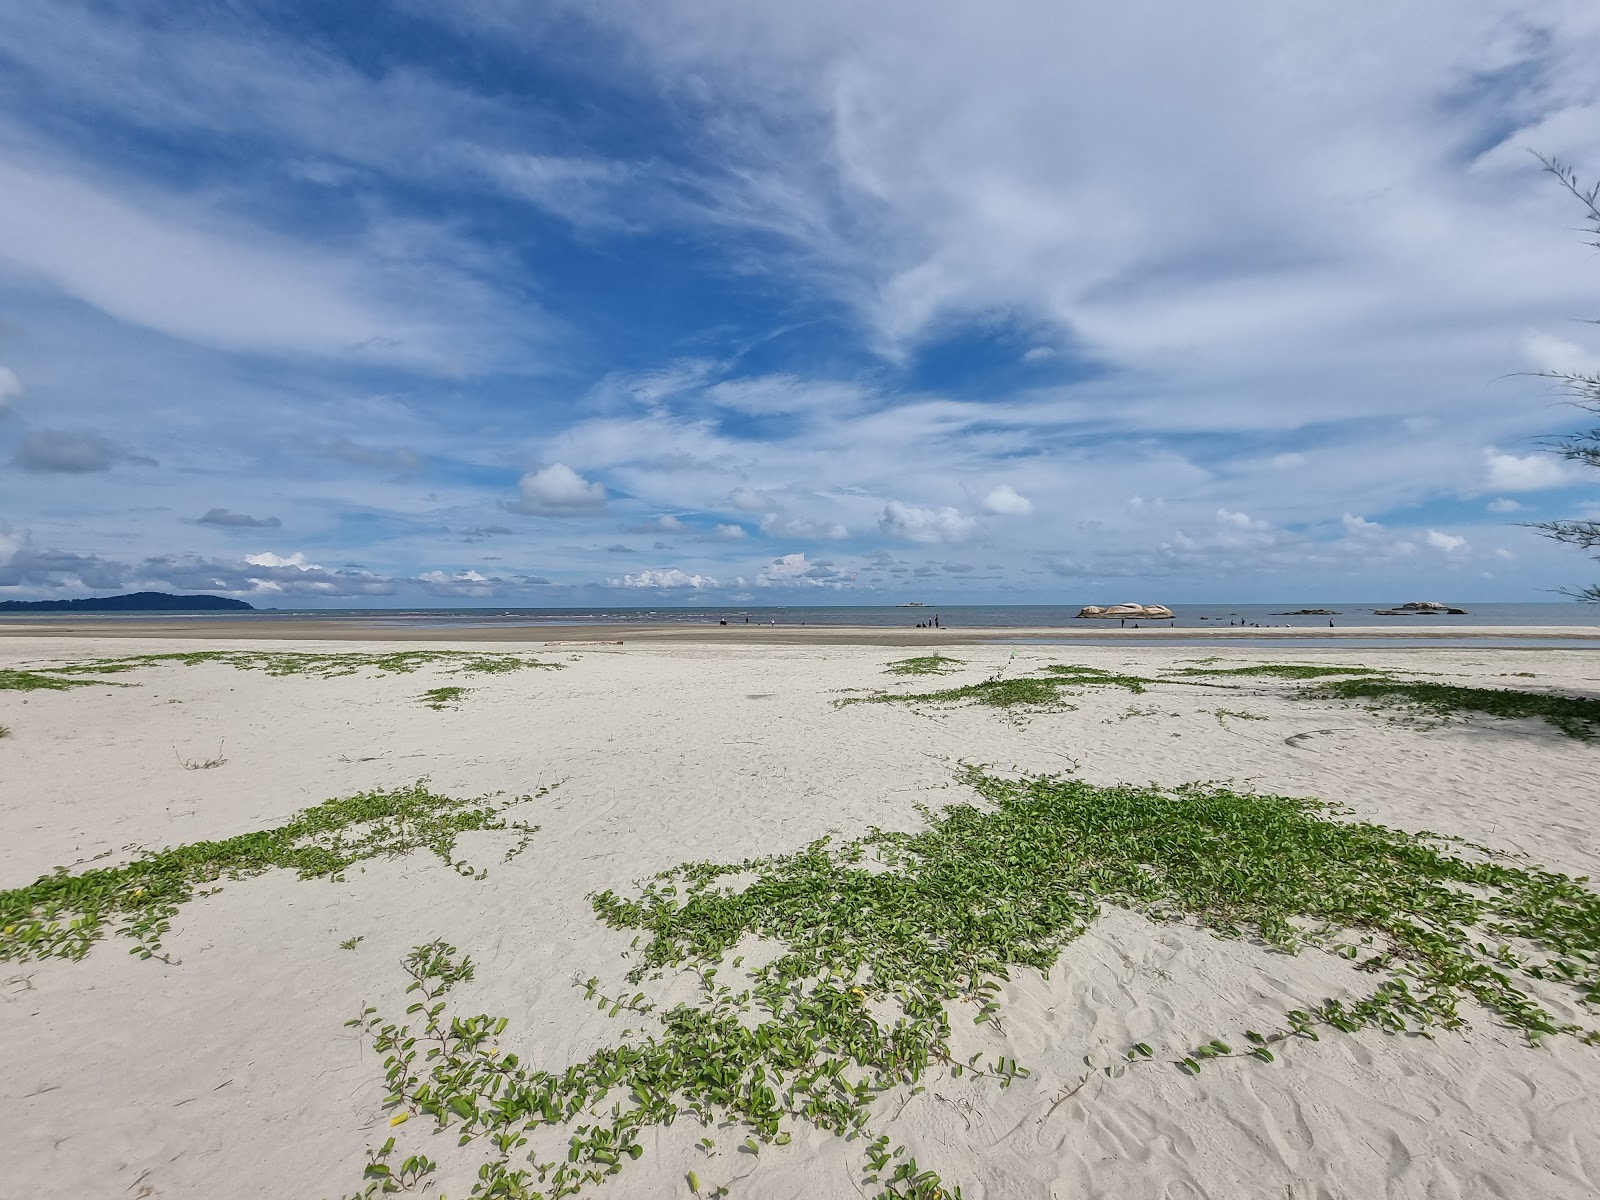 Zdjęcie Balok Beach z powierzchnią turkusowa woda